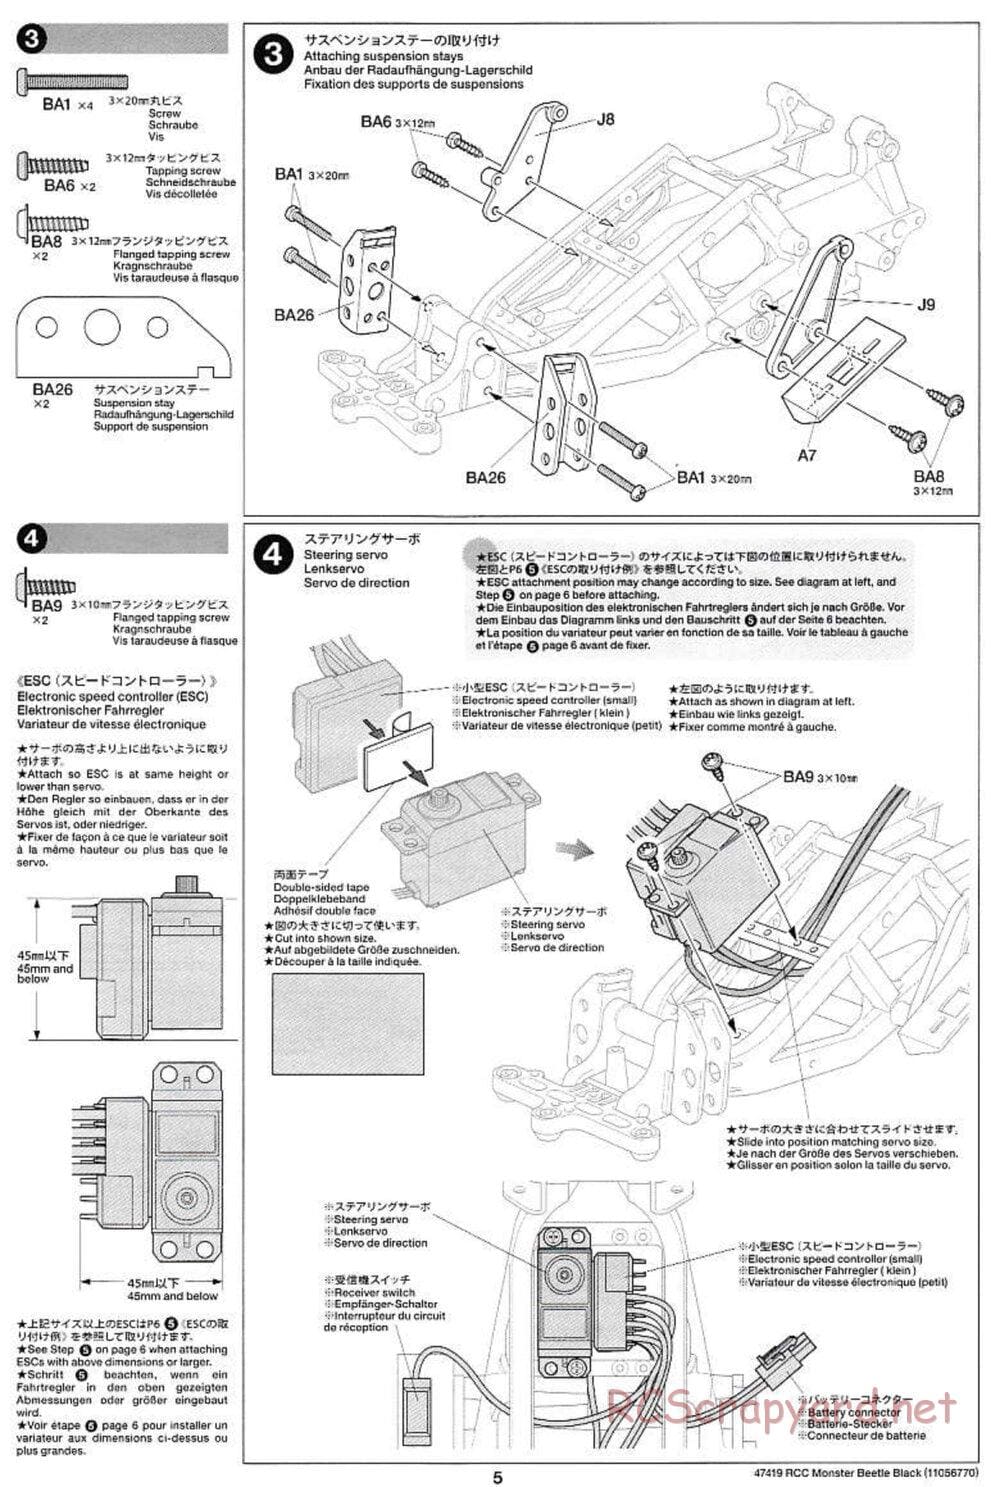 Tamiya - Monster Beetle Black Edition - ORV Chassis - Manual - Page 5